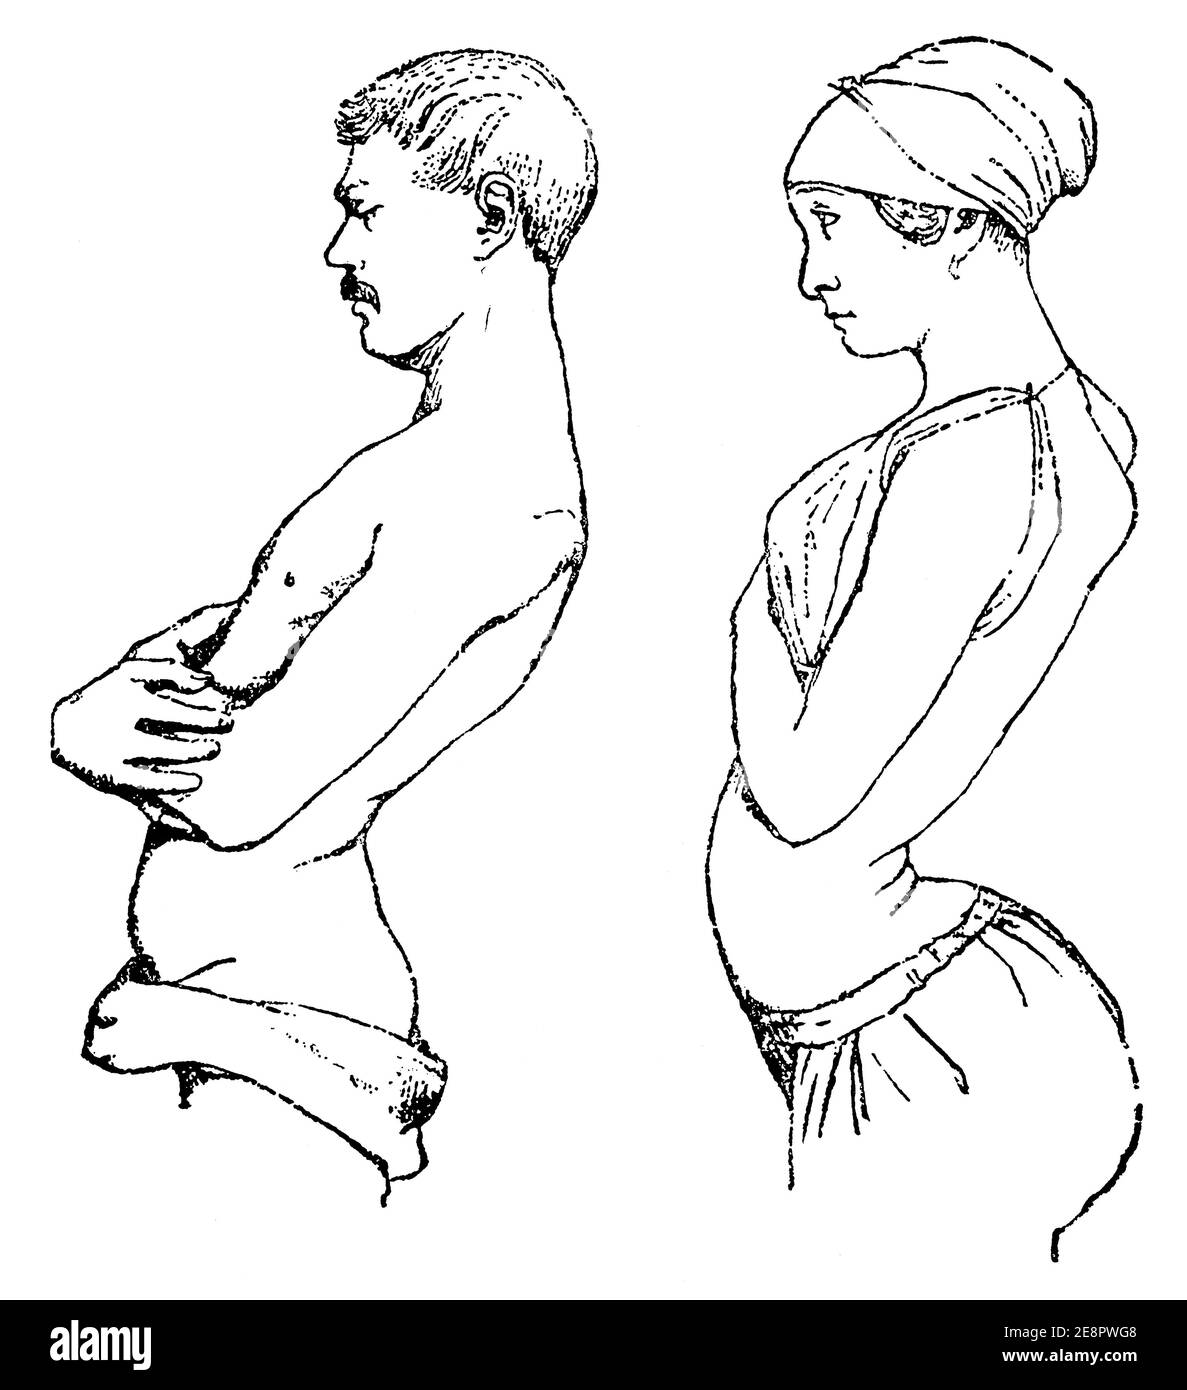 Spina dorsale molto storta rotta a causa della scarsa postura. Illustrazione del 19 ° secolo. Germania. Sfondo bianco. Foto Stock